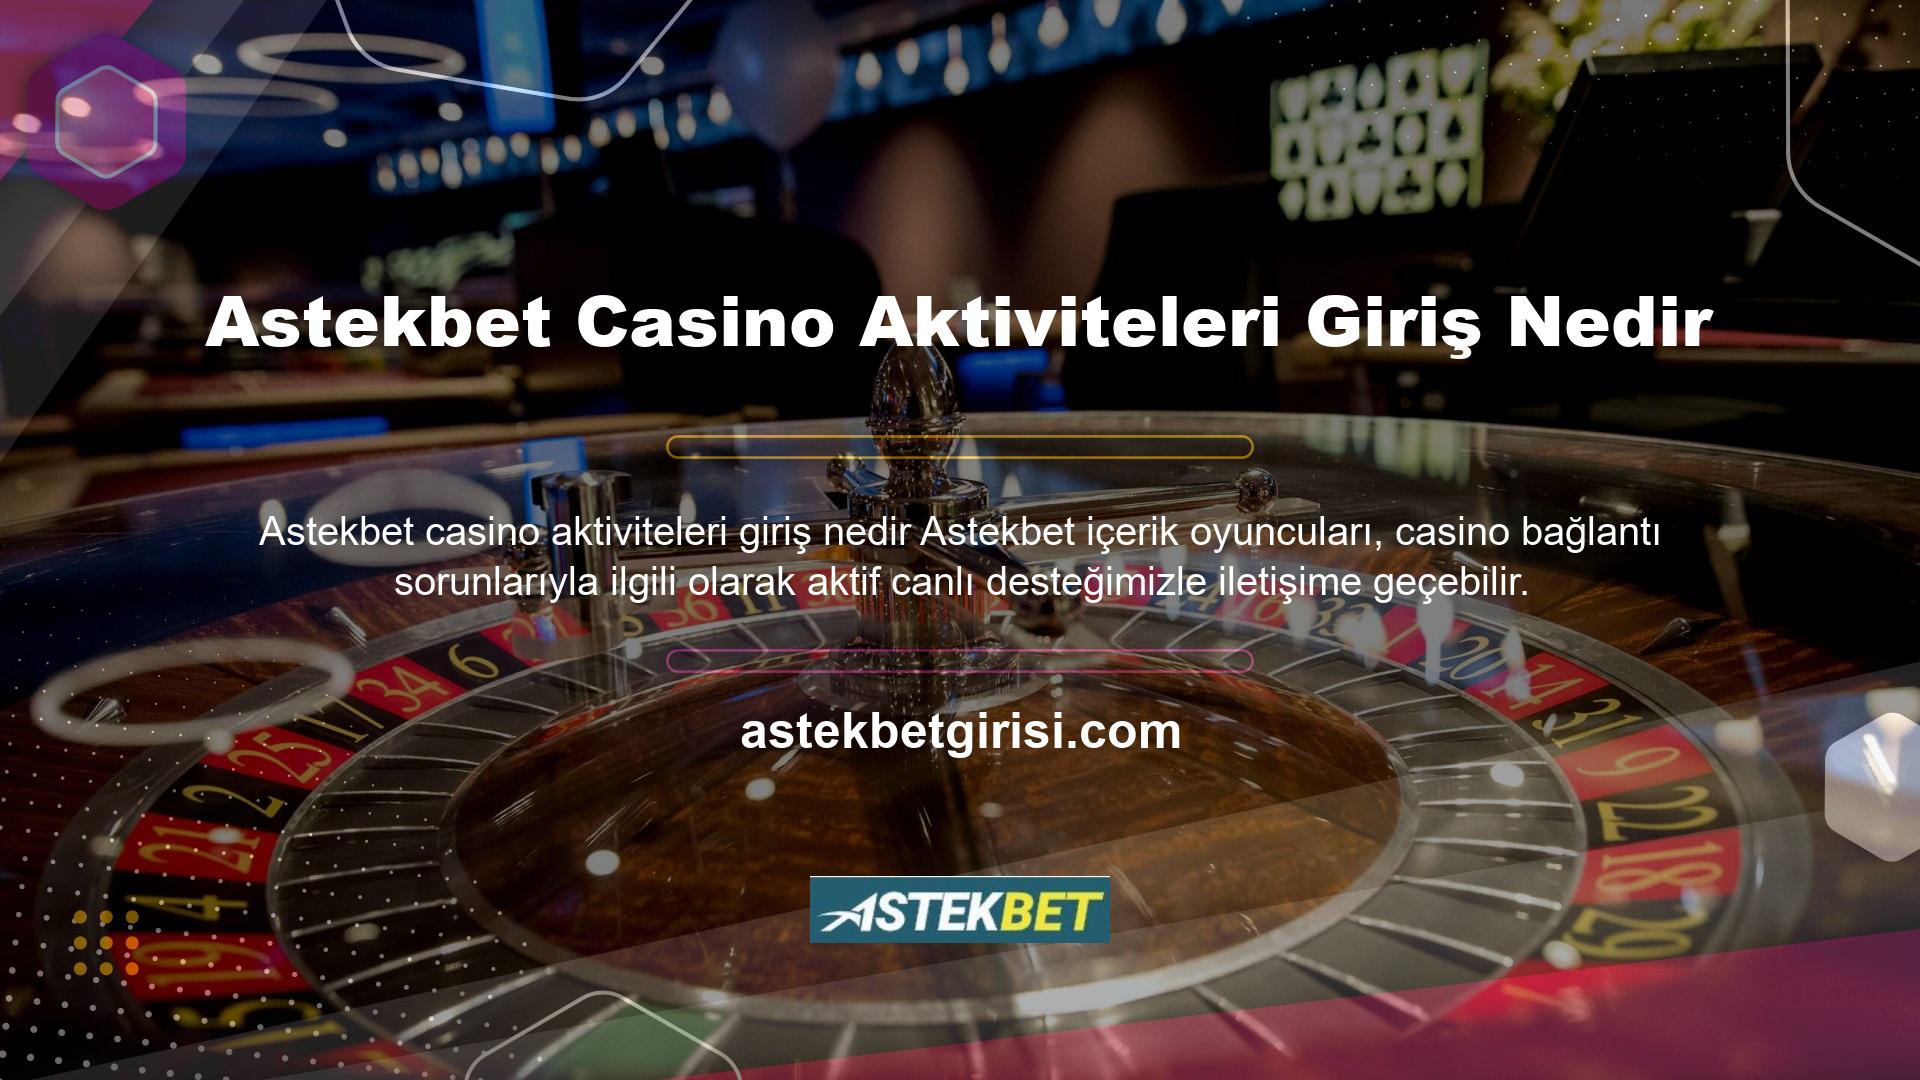 Ayrıca casino sitesinin ödeme teknolojisi de kullanıcının beklentilerini karşılamaktadır